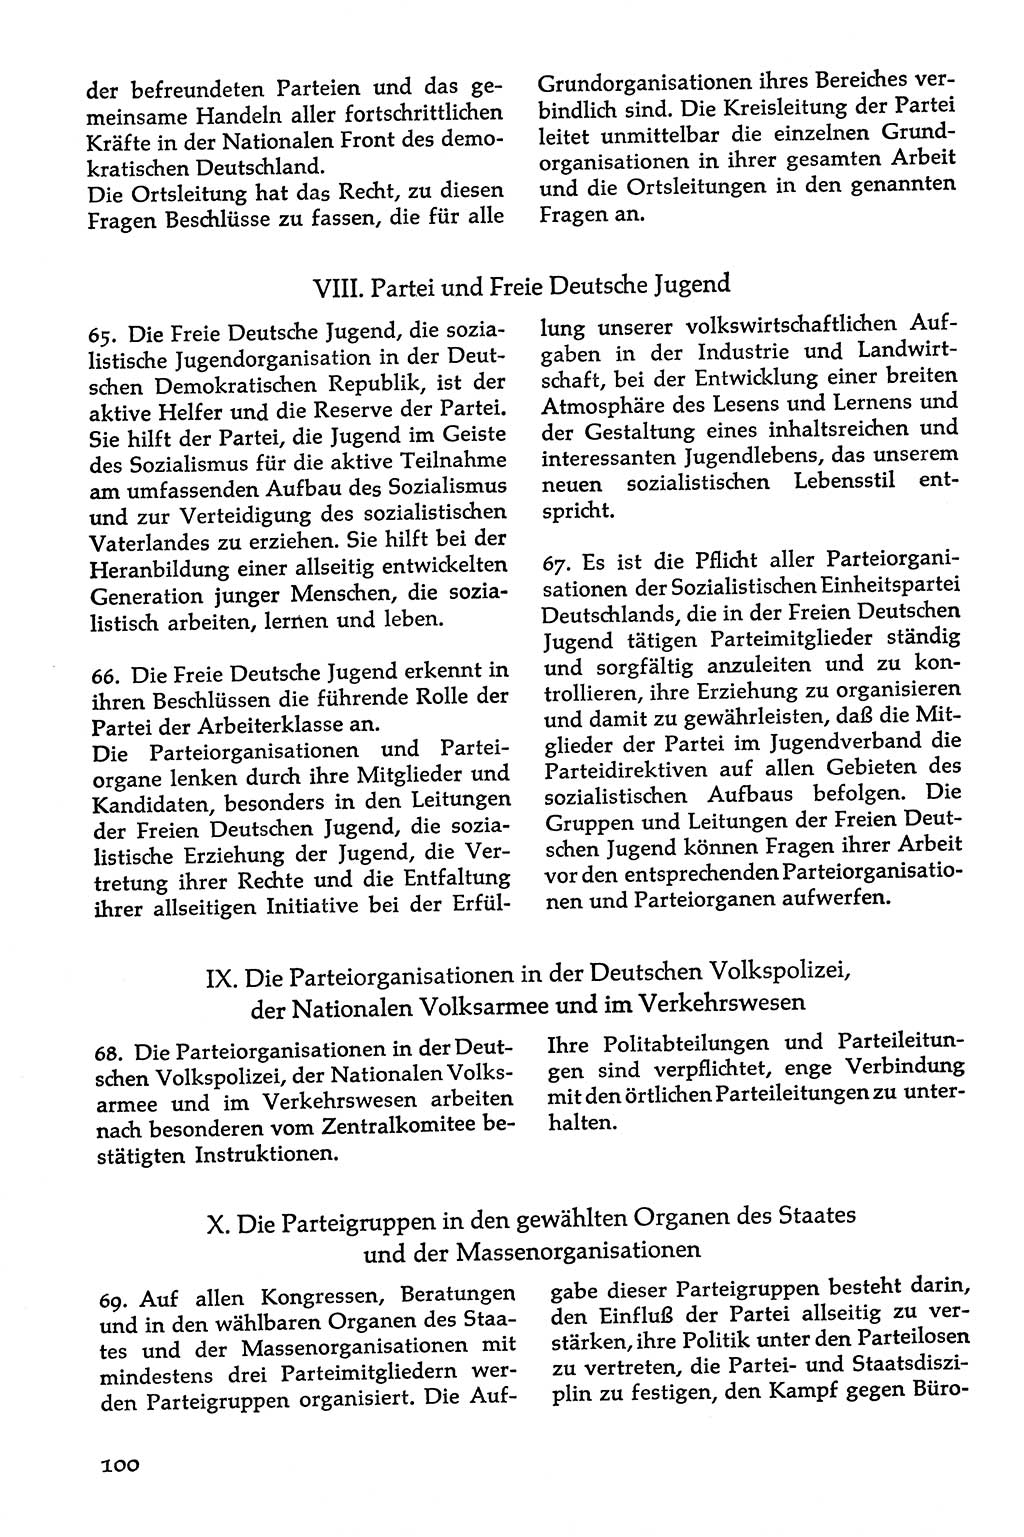 Volksdemokratische Ordnung in Mitteldeutschland [Deutsche Demokratische Republik (DDR)], Texte zur verfassungsrechtlichen Situation 1963, Seite 100 (Volksdem. Ordn. Md. DDR 1963, S. 100)